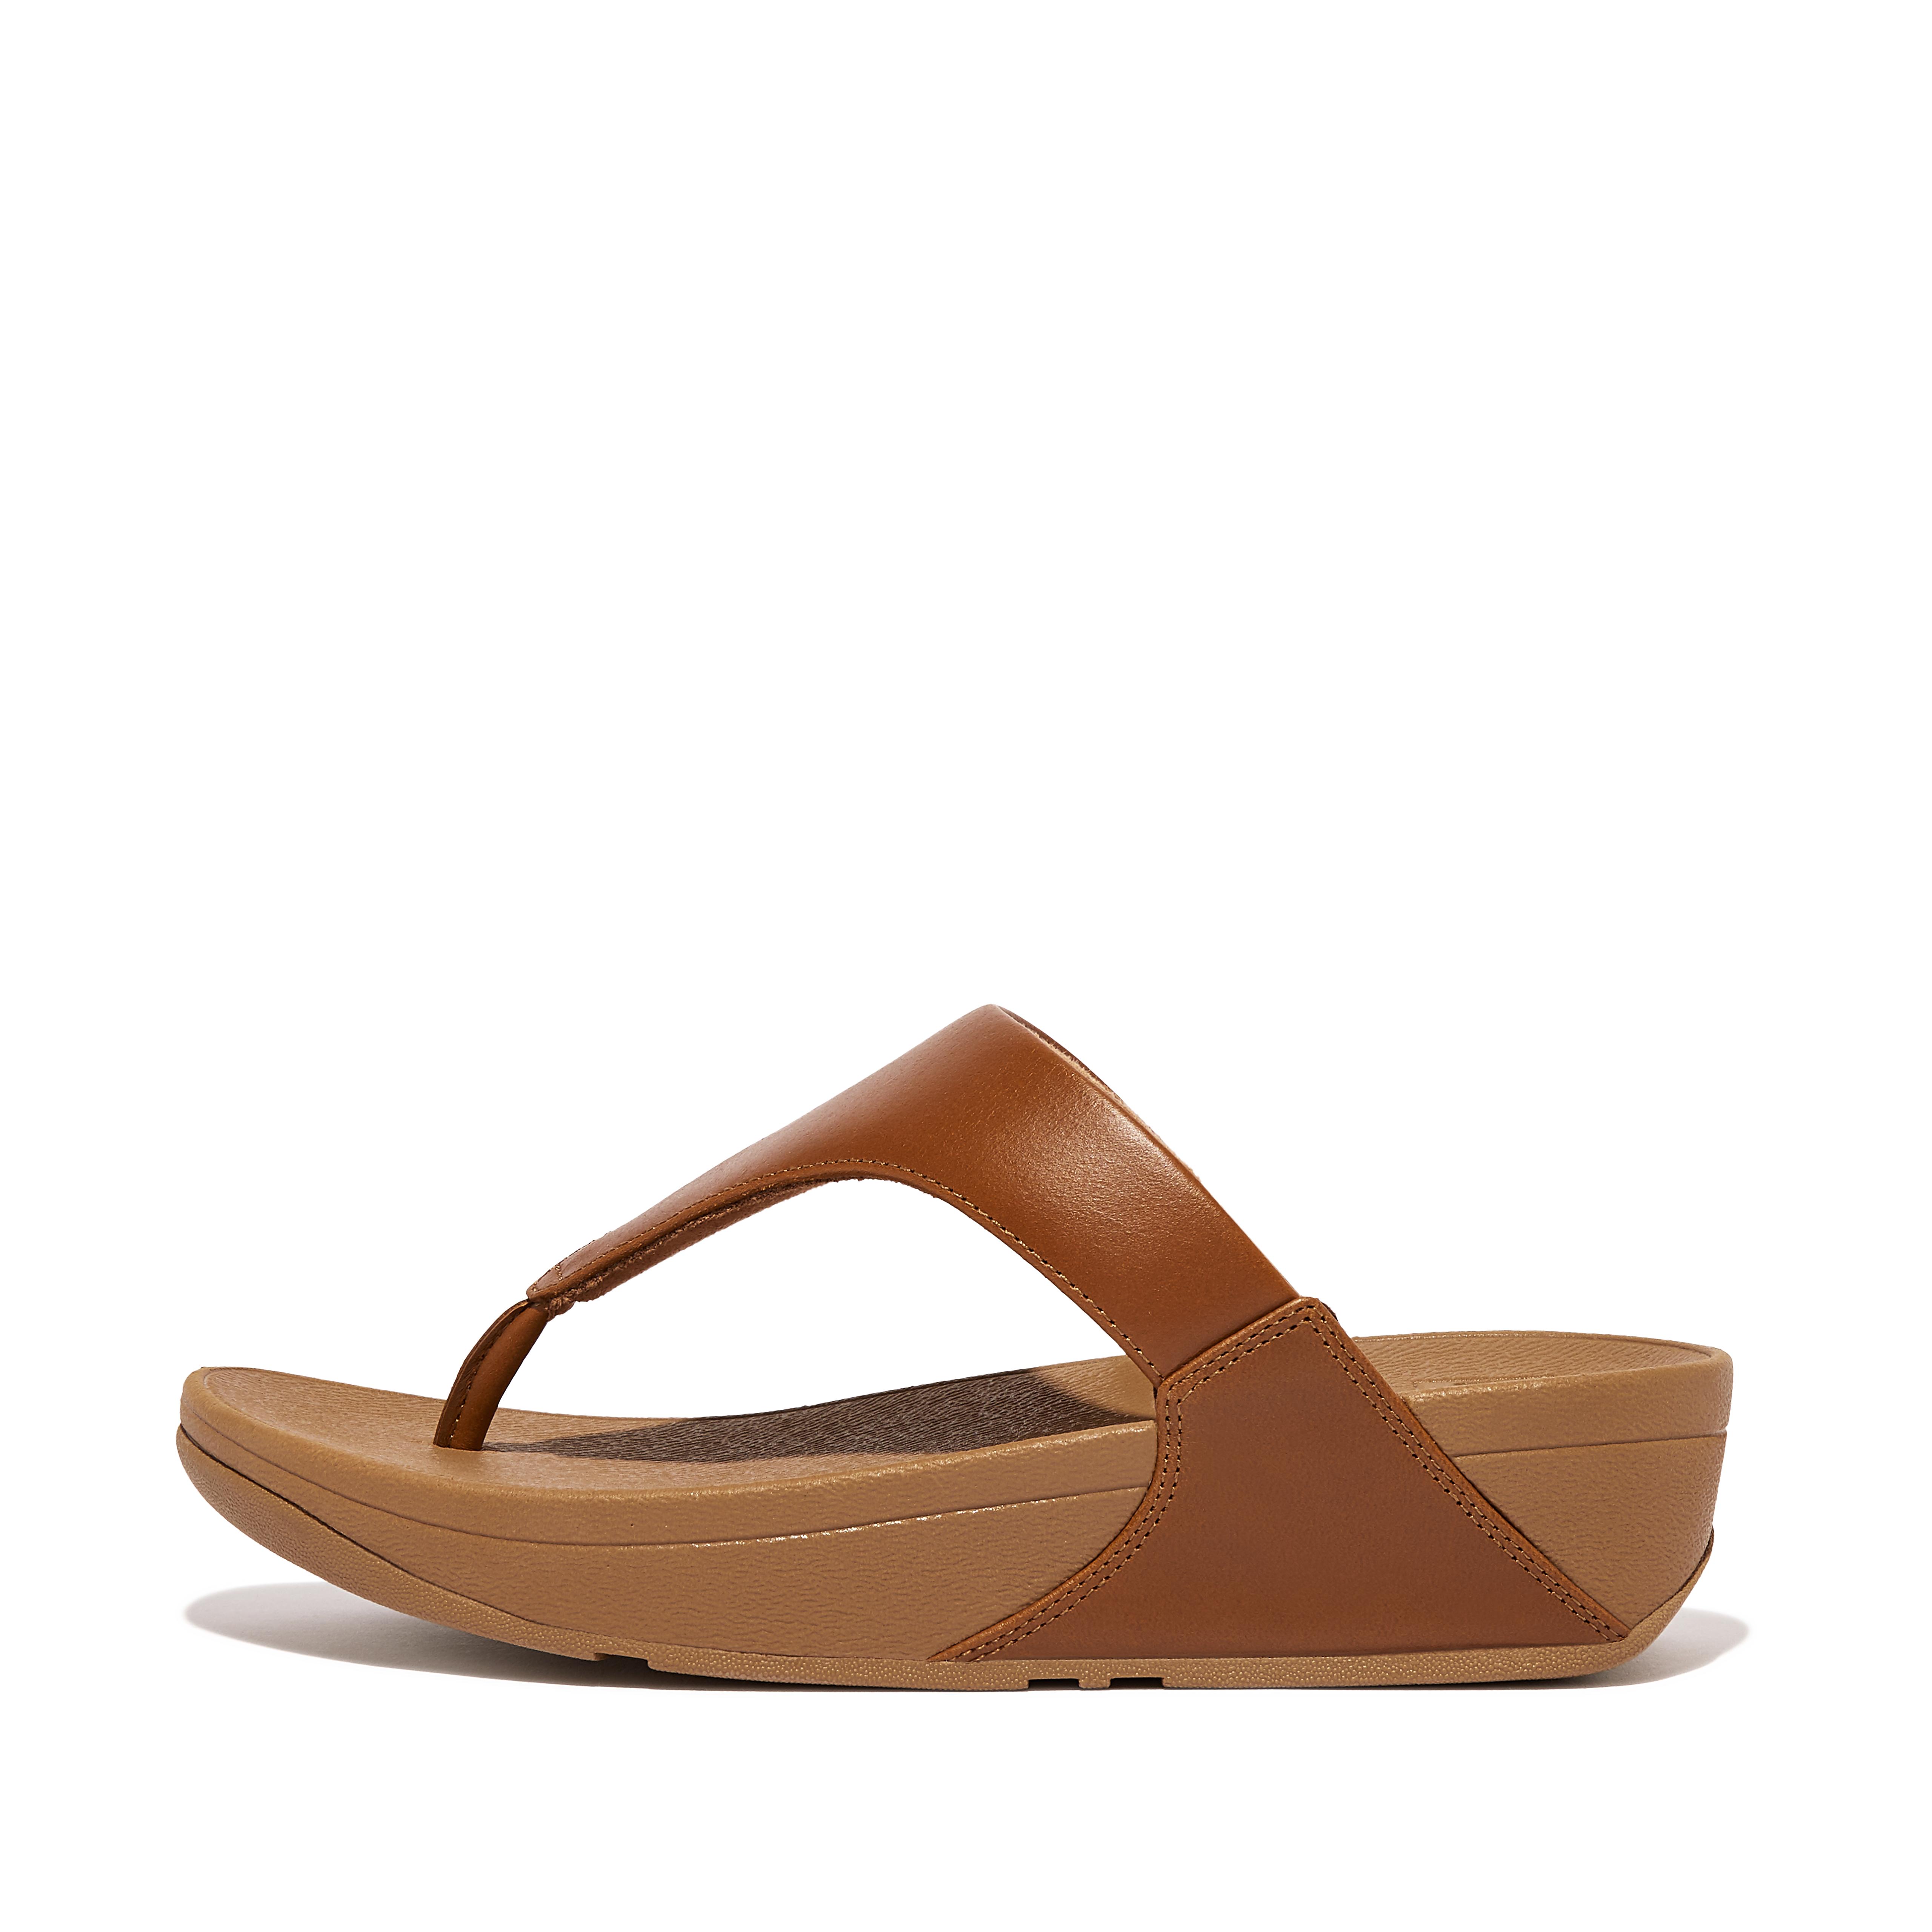 핏플랍 샌들 FitFlop LULU Leather Toe-Post Sandals,Light Tan